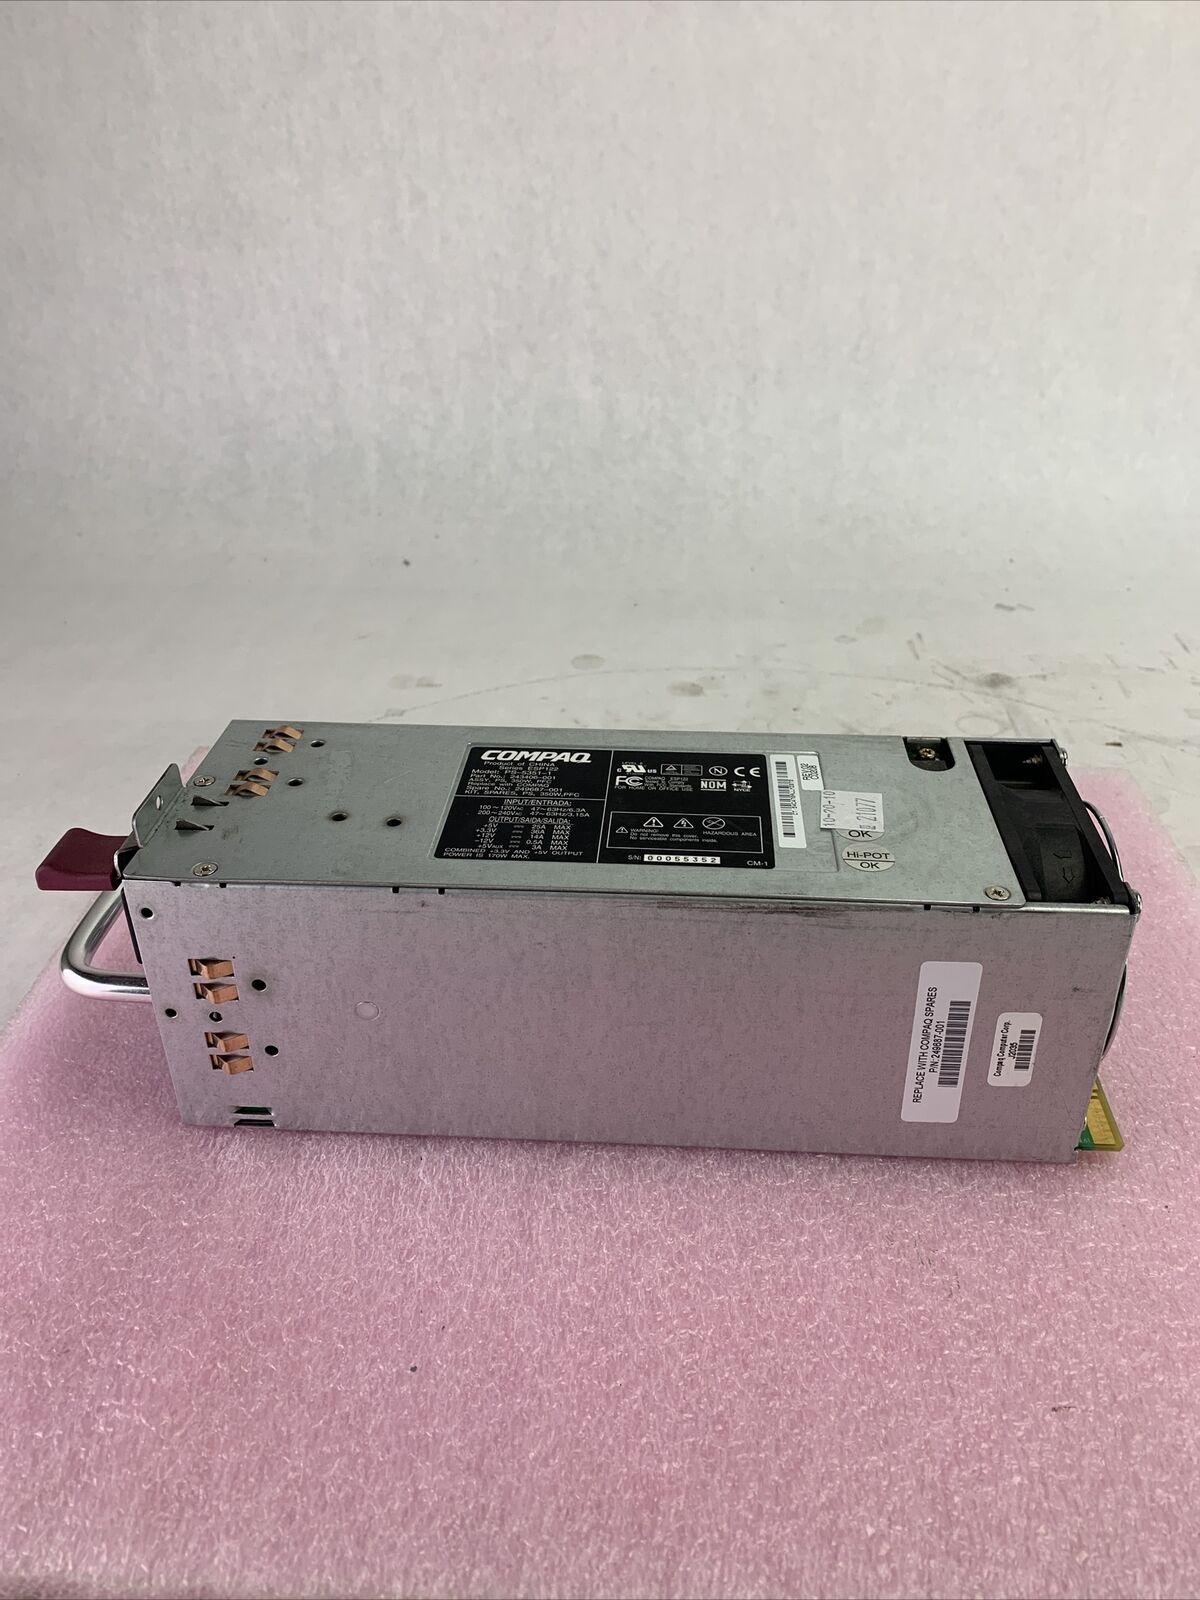 Compaq PS-5351-1 170W Power Module